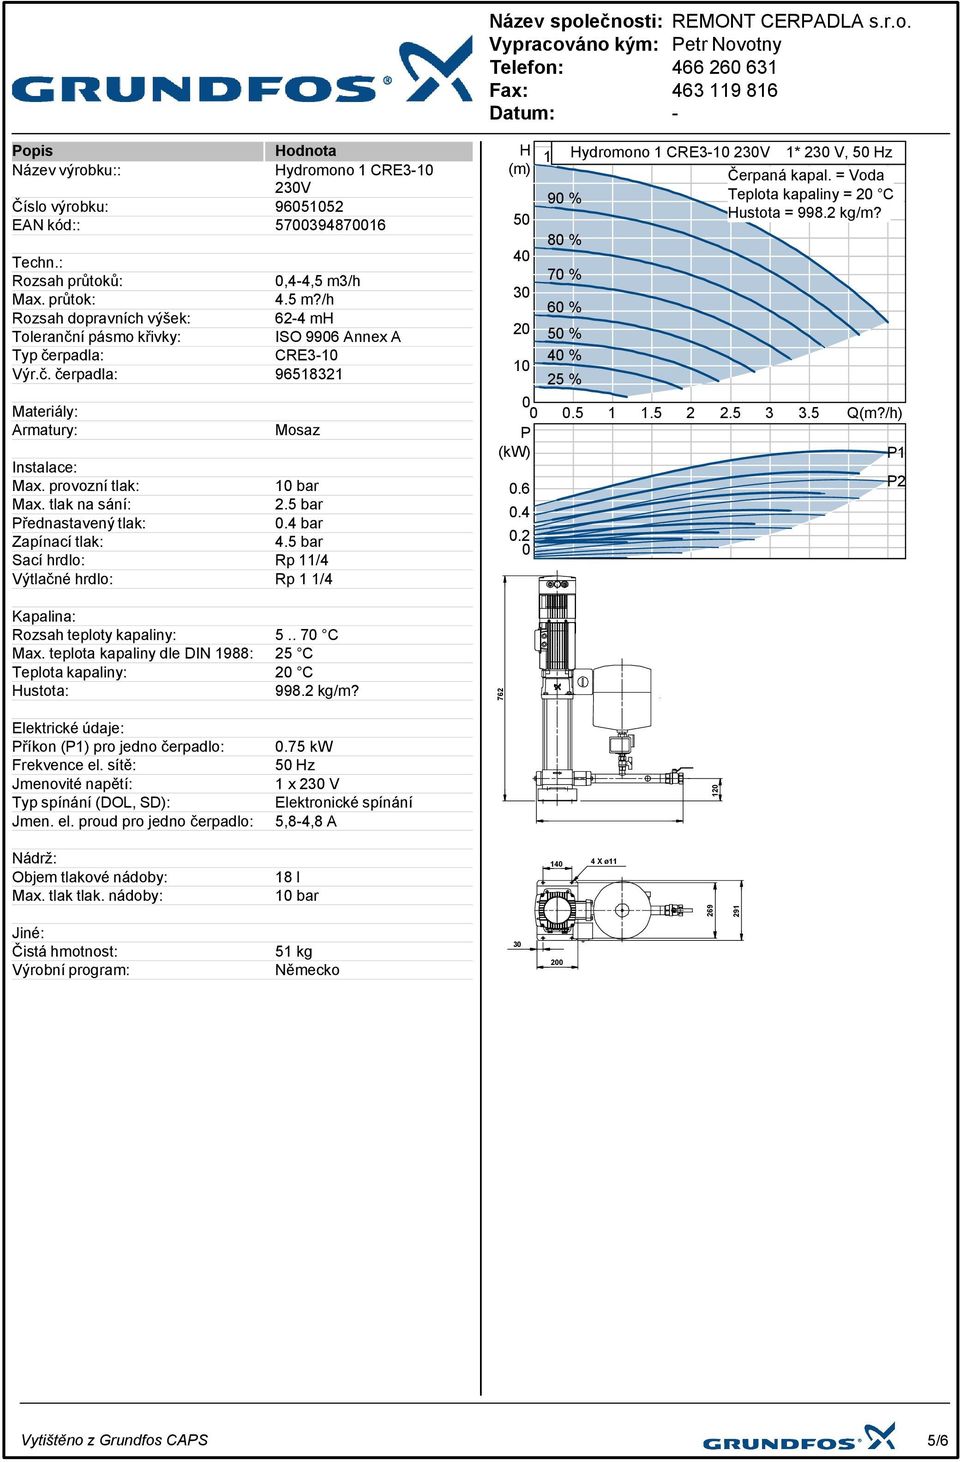 provozní tlak: Max. tlak na sání: 2.5 bar Přednastavený tlak:.4 bar Zapínací tlak: 4.5 bar Sací hrdlo: Rp 11/4 Výtlačné hrdlo: Rp 1 1/4 H (m) 5 4 3 2 1.5 1 1.5 2 2.5 3 3.5 P (kw).6.4.2 1 Hydromono % 1 CRE31 23V 1* 23 V, 5 Hz Čerpaná kapal.